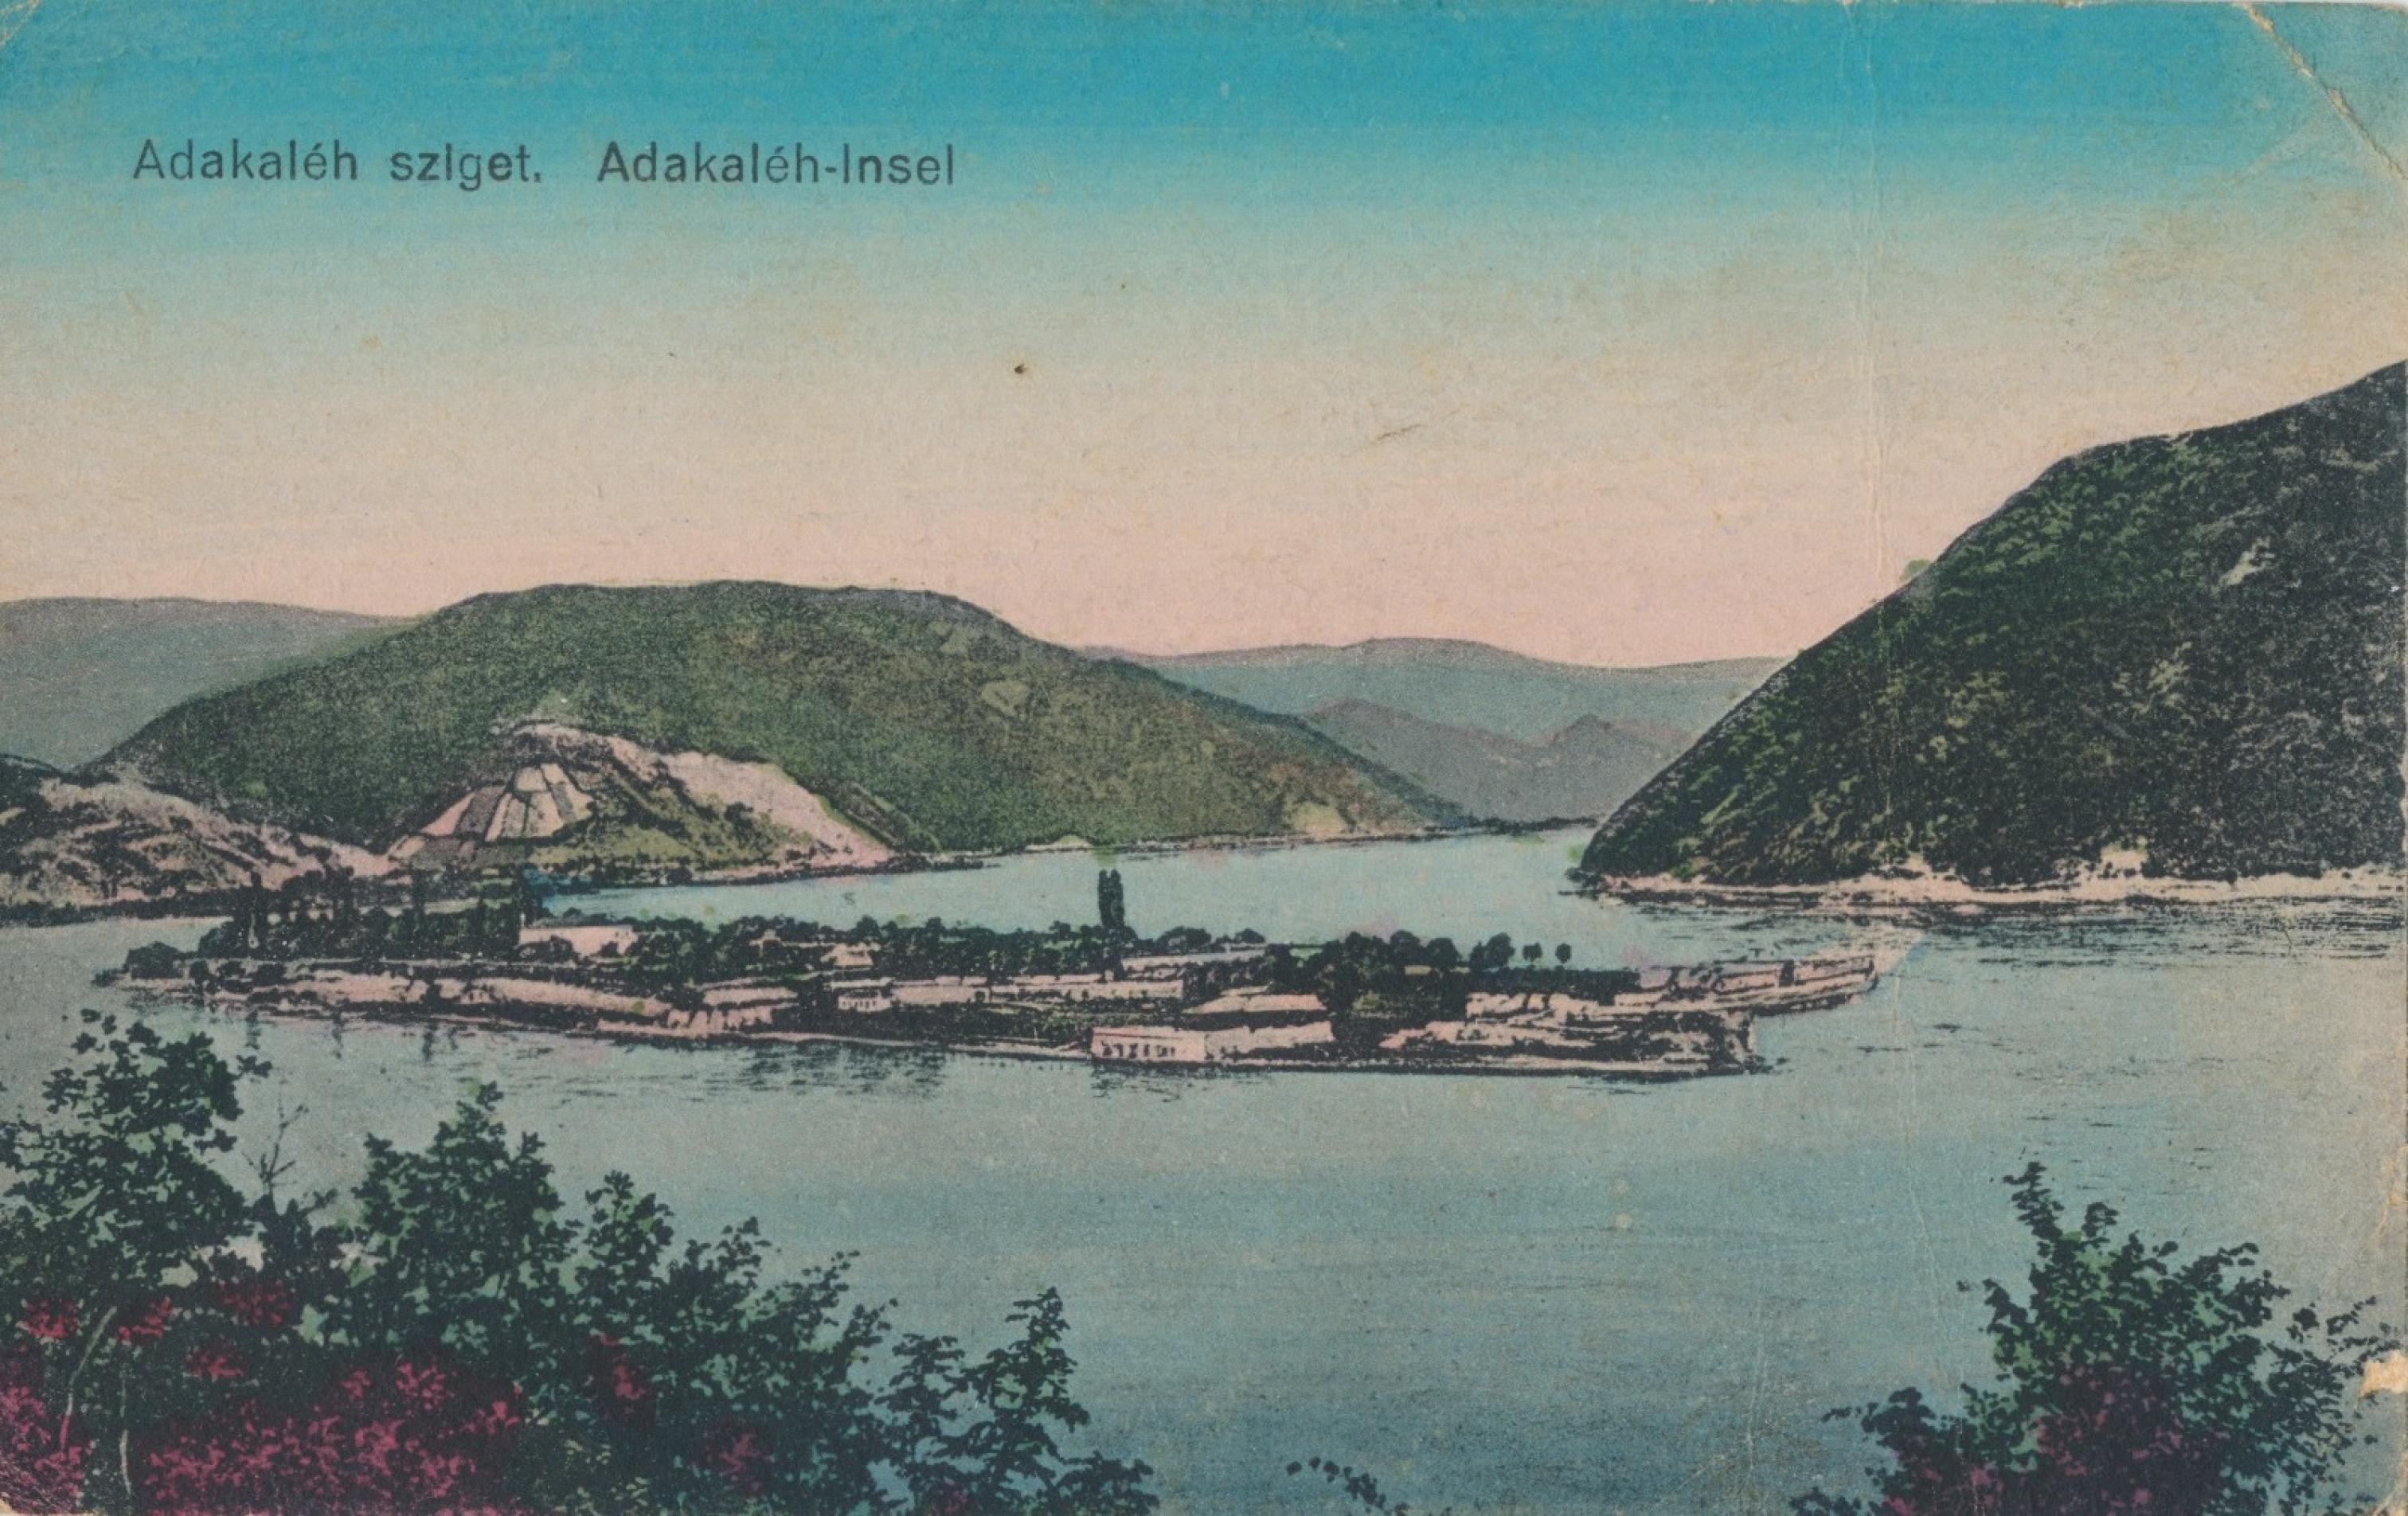 Kolorierte Postkarte einer kleinen Insel im Fluss zwischen schroffen Bergen.